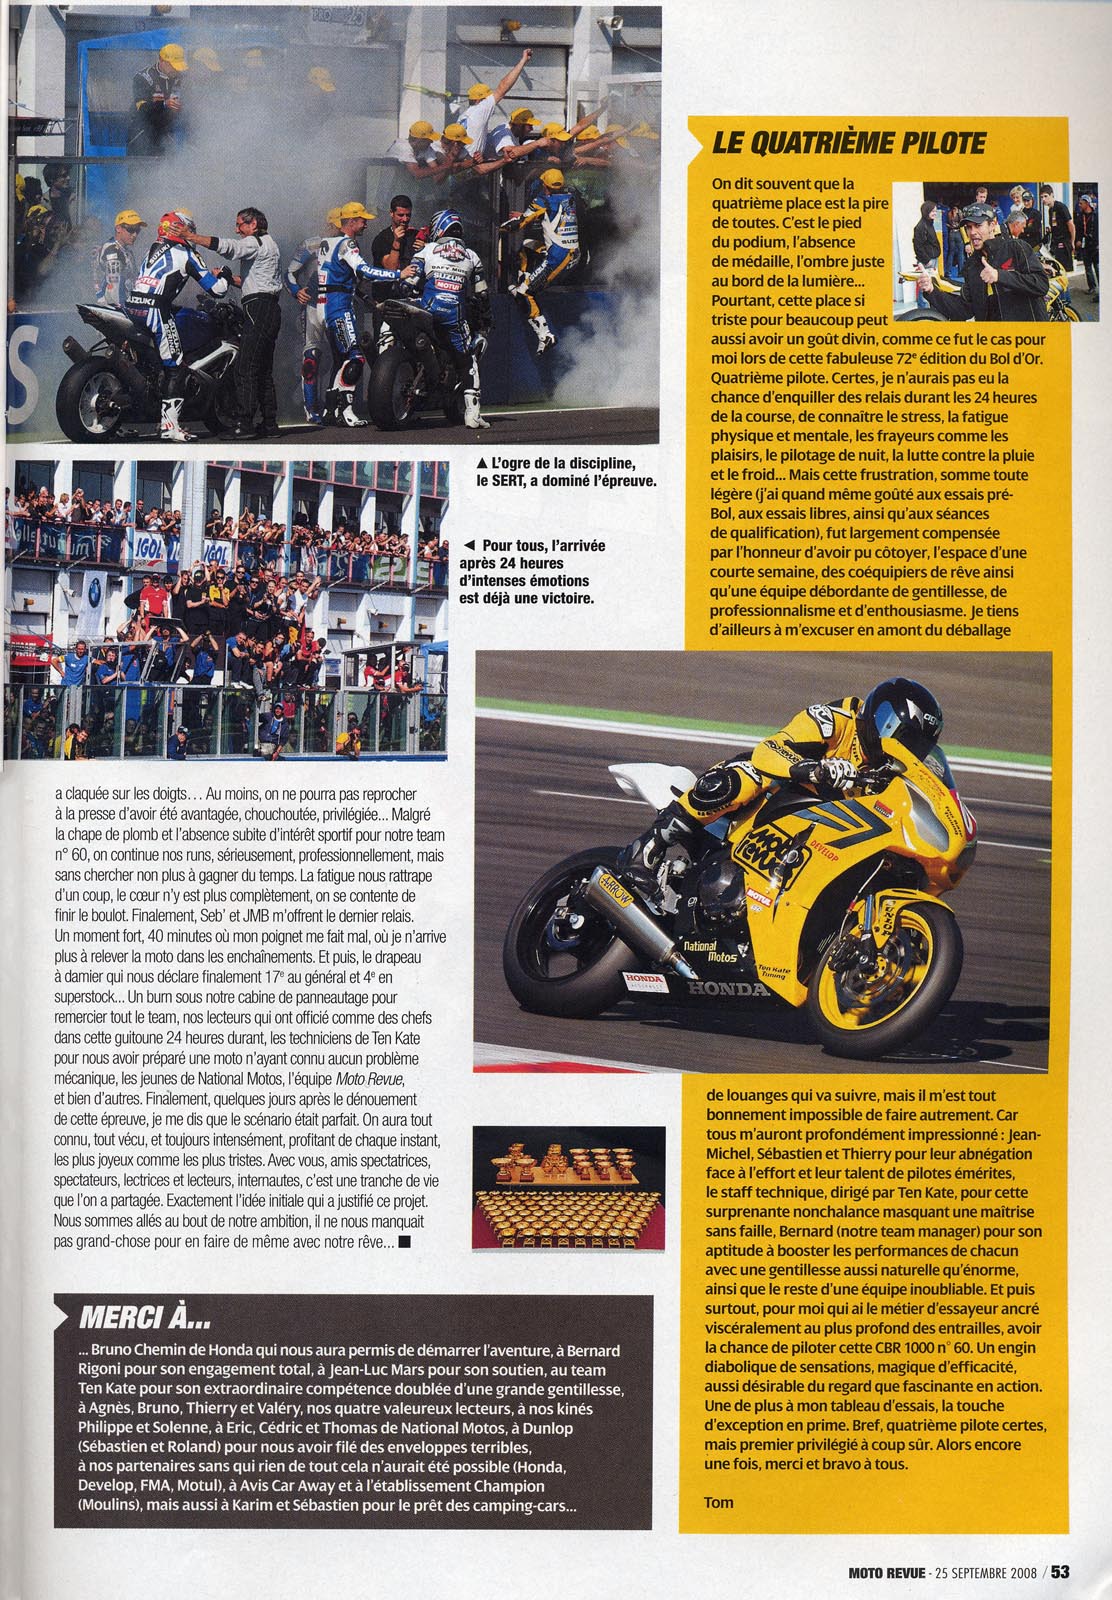 La page 53 du Moto Revue 3825 où on trouve un excellent papier de Thierry Traccan sur cette épreuve du Bol d'Or 2008